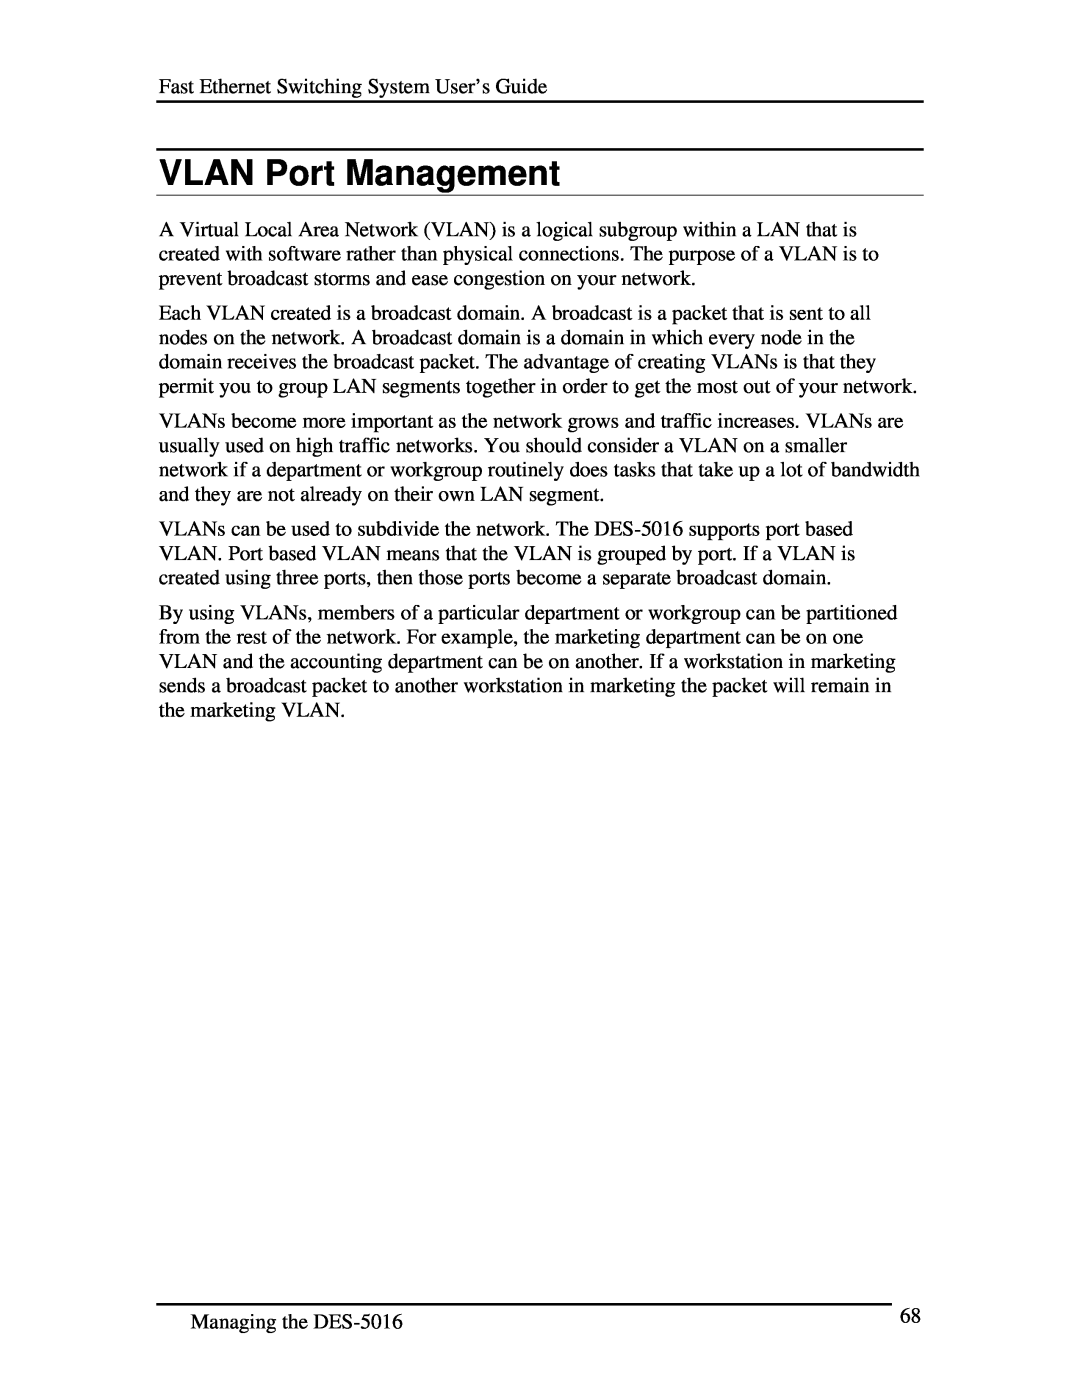 D-Link DES-5016 manual VLAN Port Management 